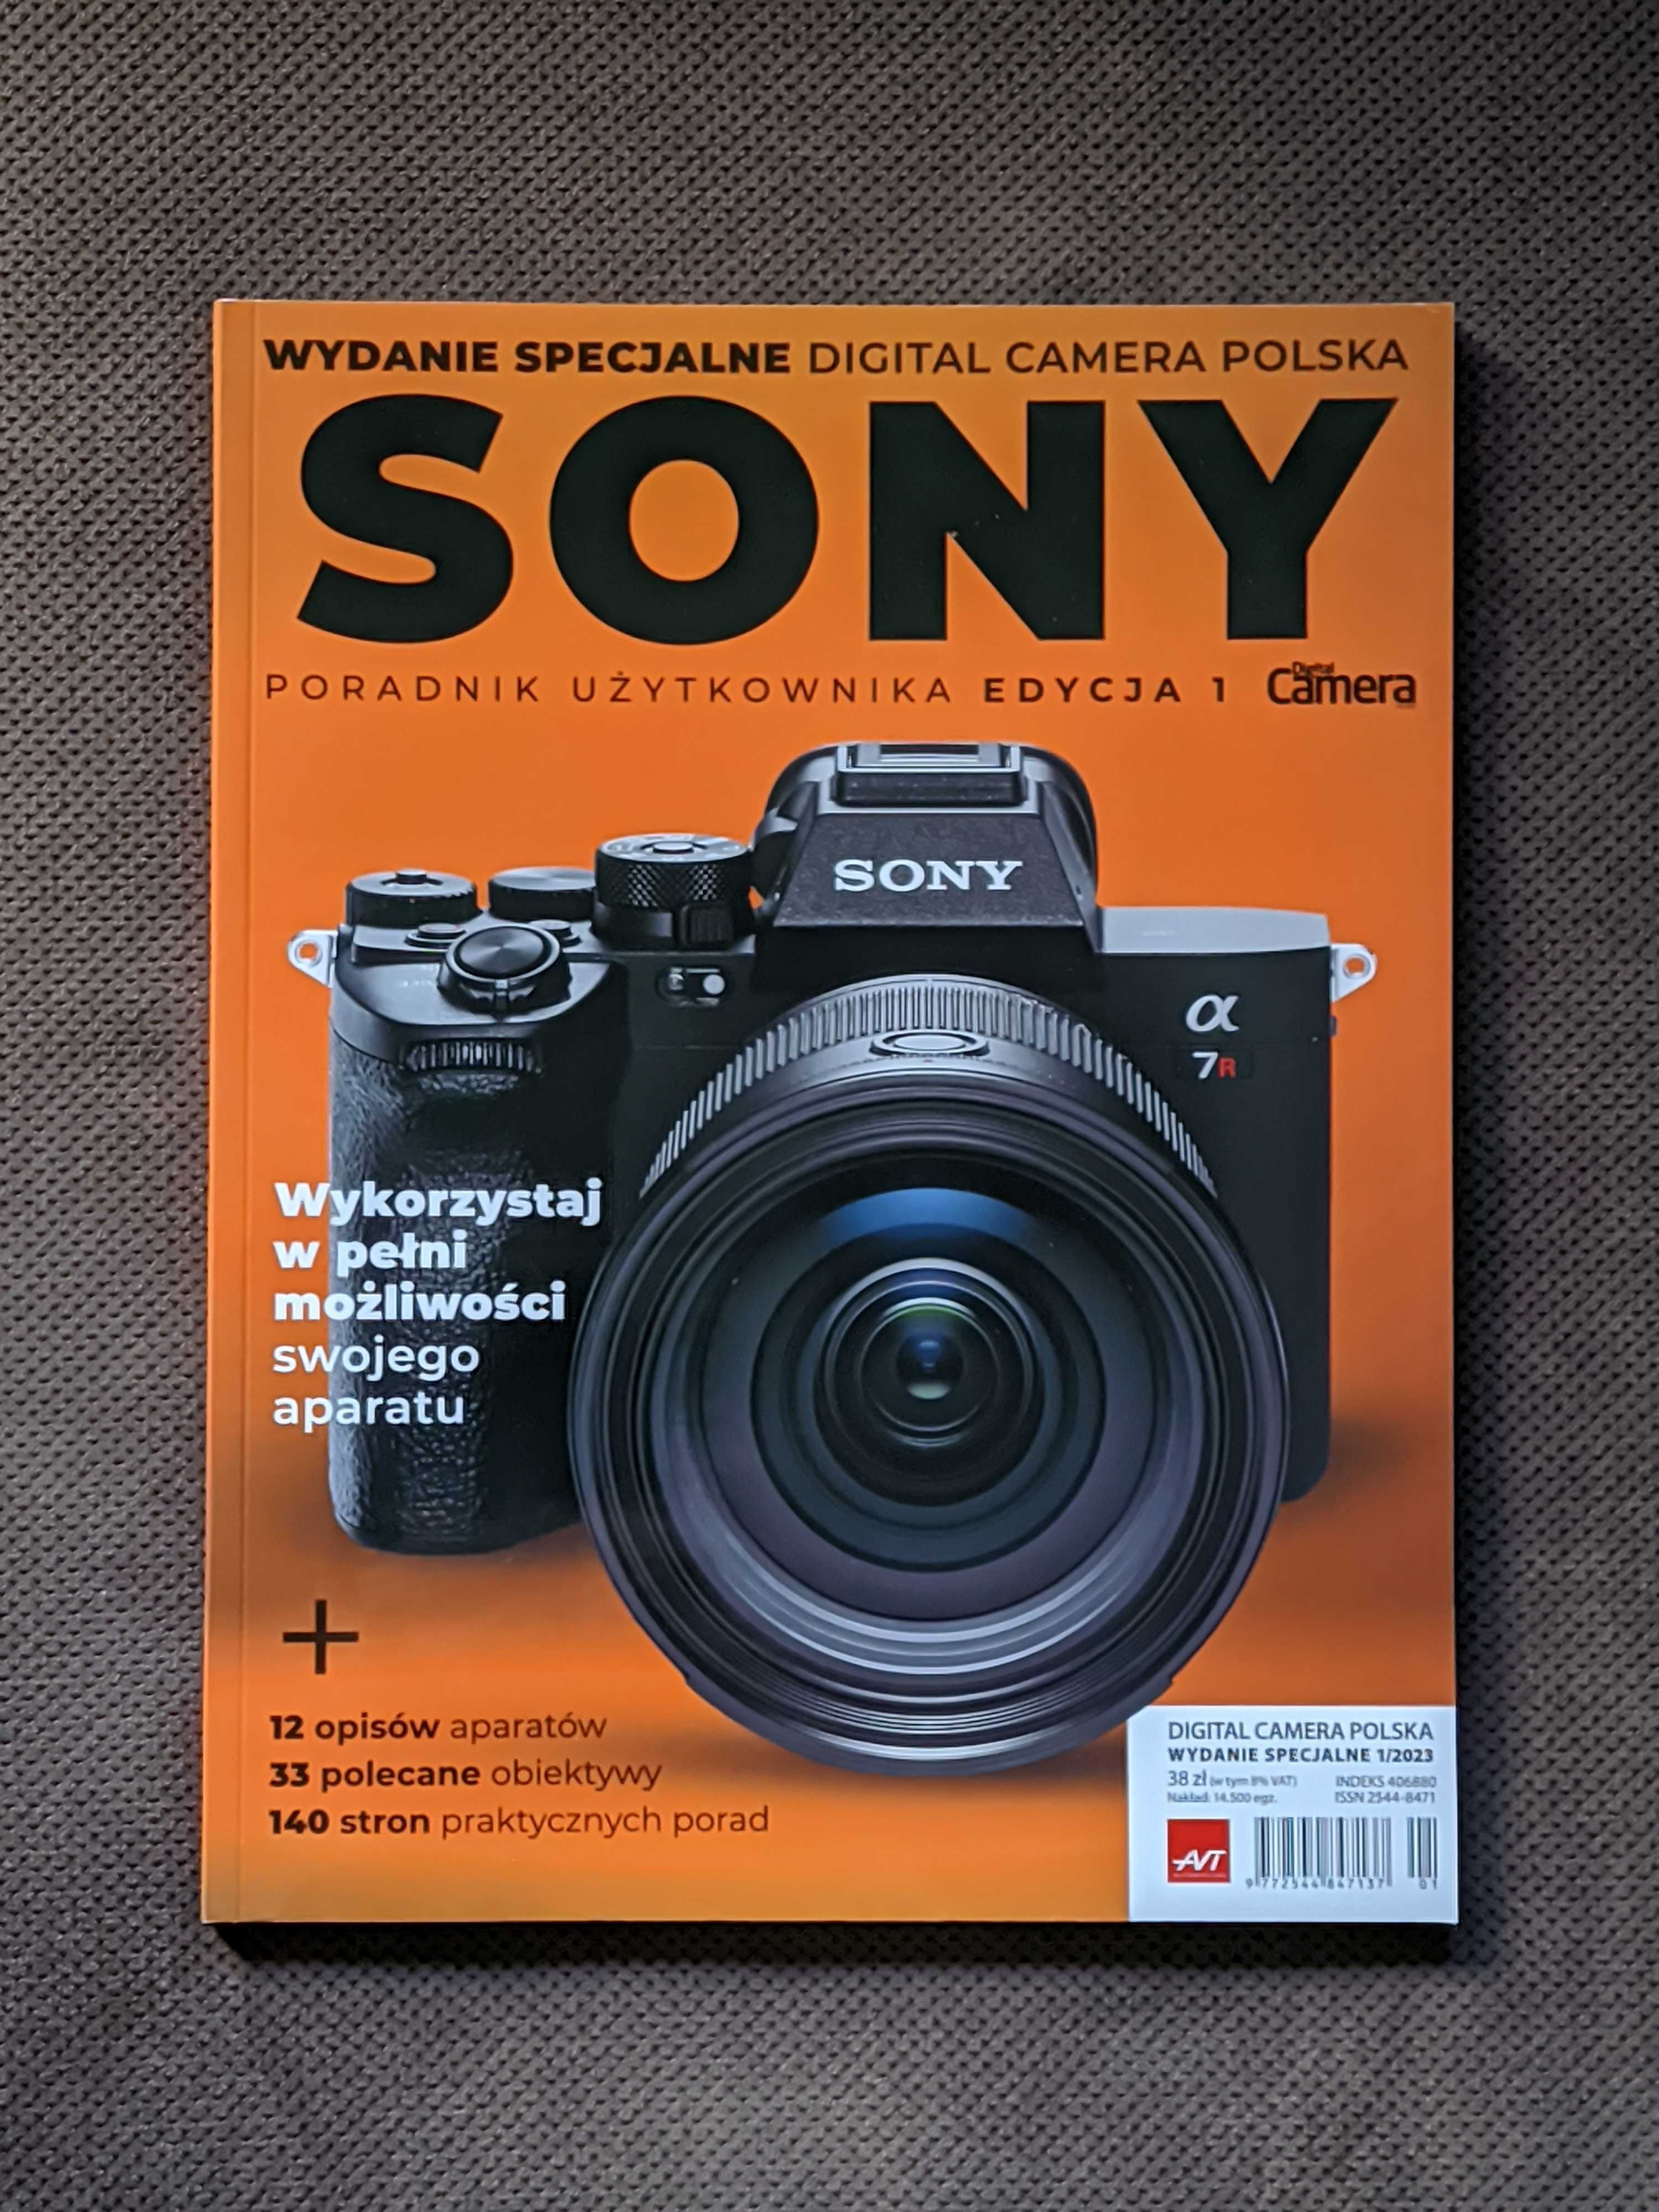 Sony poradnik użytkownika - Wydanie specjalne Digital camera polska